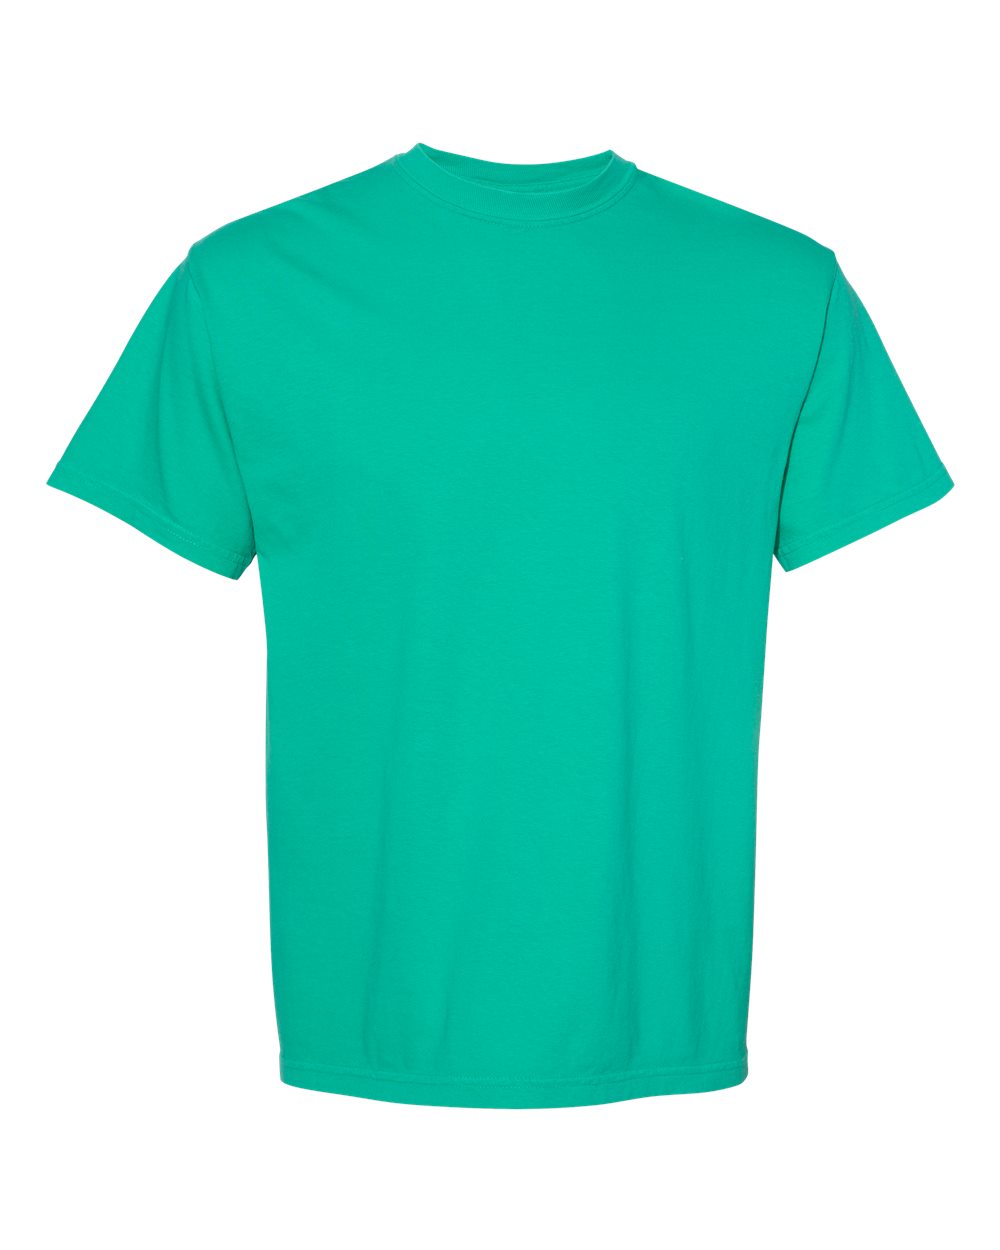 Comfort Colors C1717 Adult 6.1 oz. T-Shirt - Charcoal - 4XL